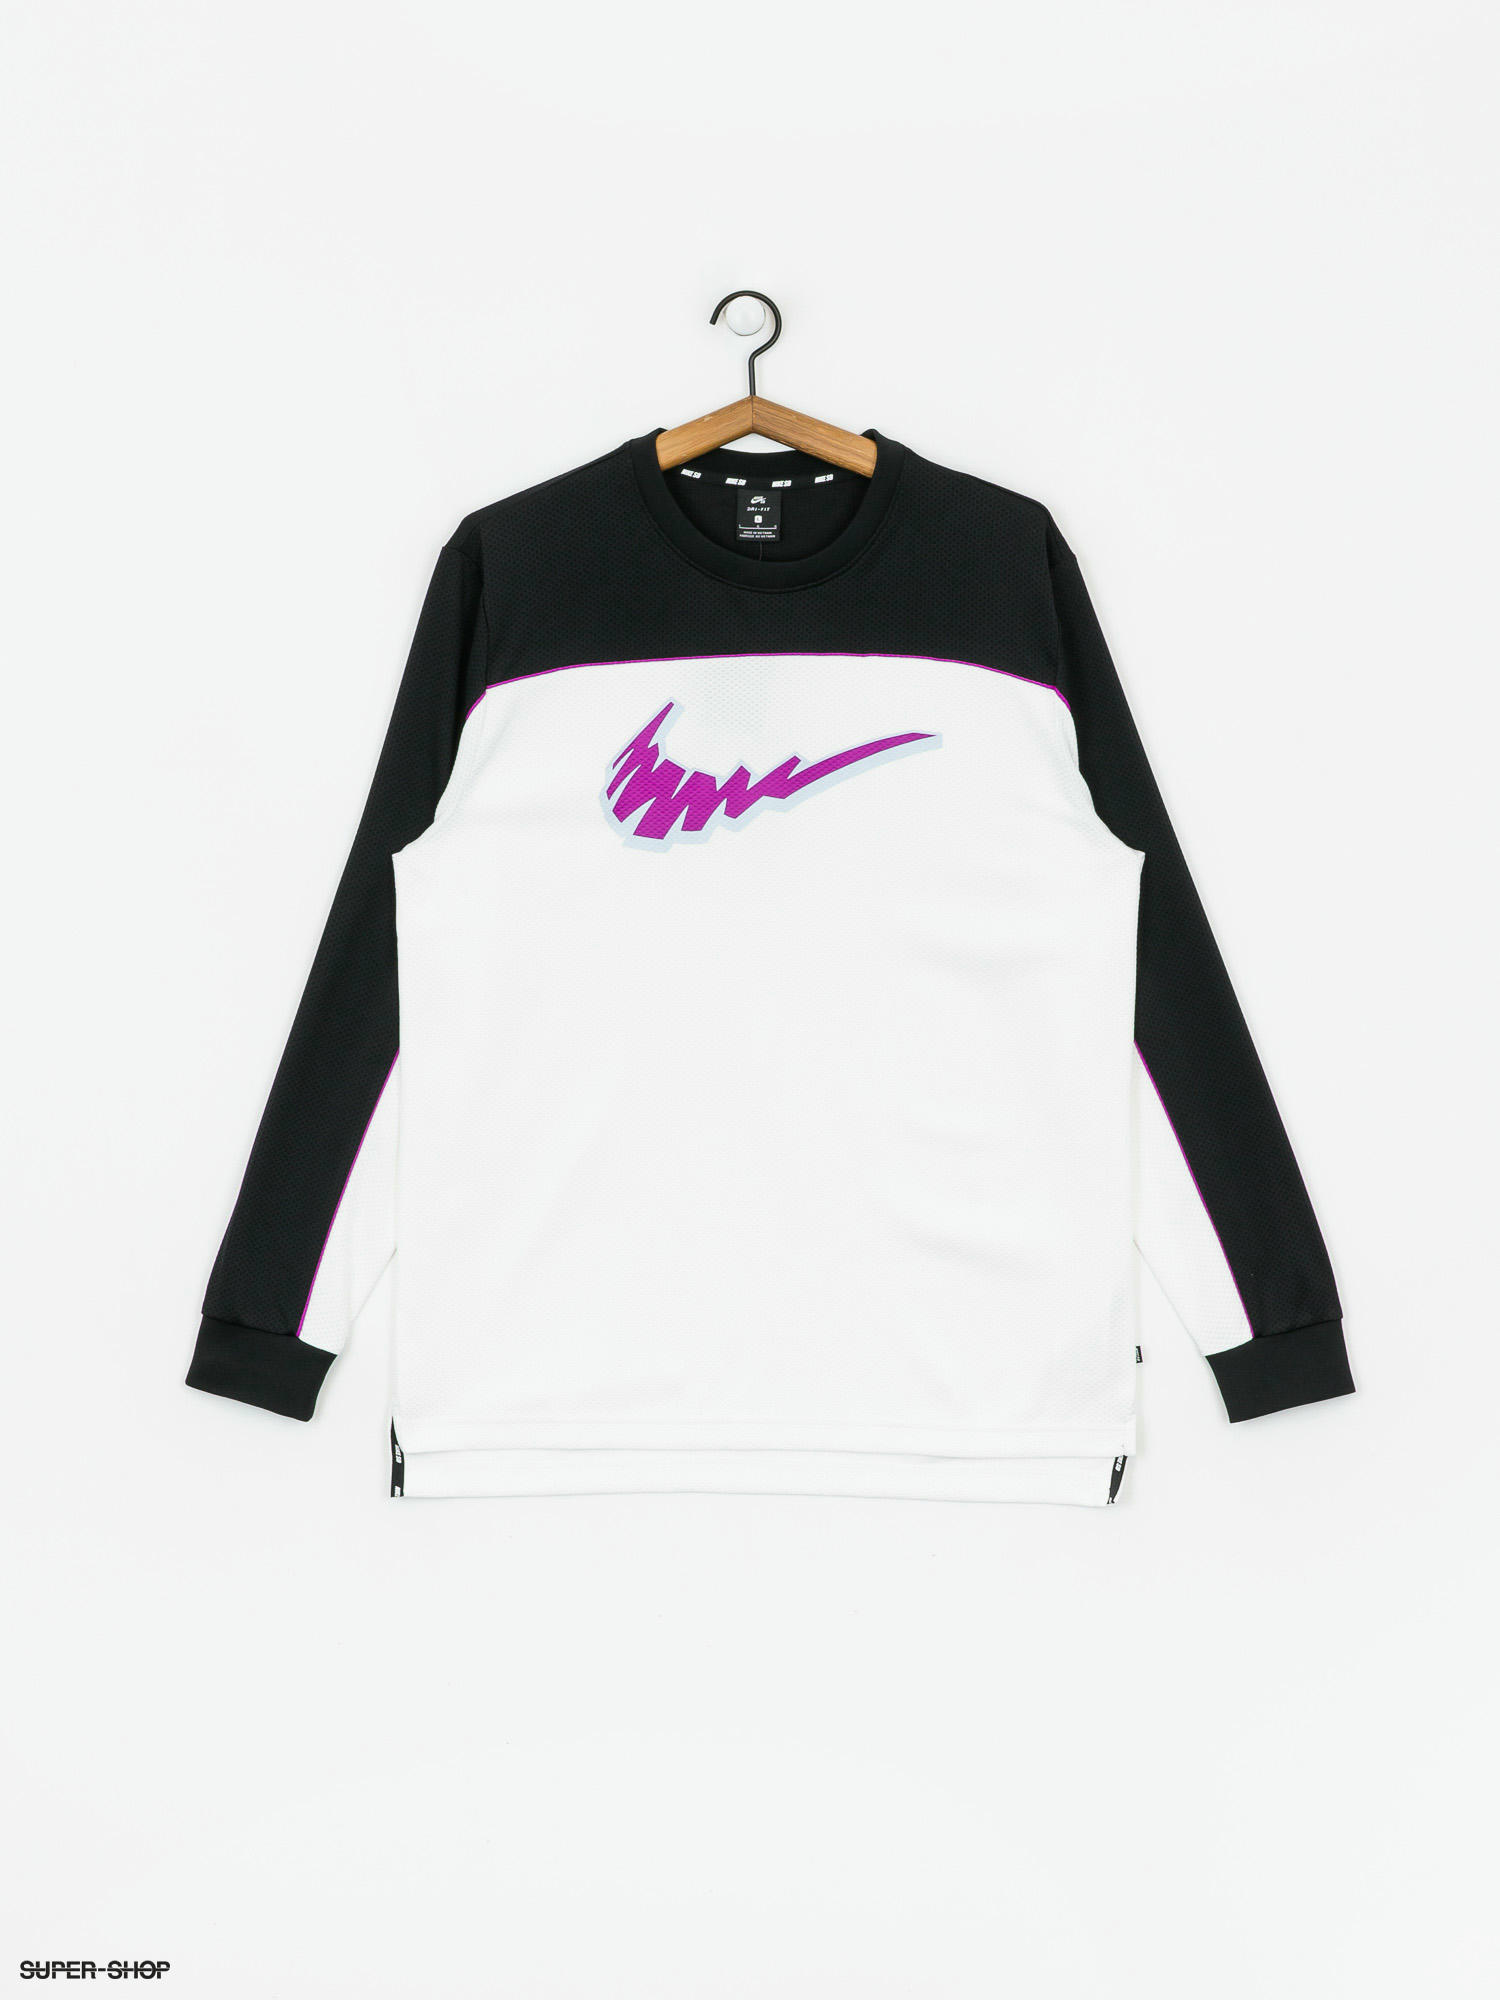 Nike SB Dri Fit Longsleeve (black/white/vivid purple/vivid purple)